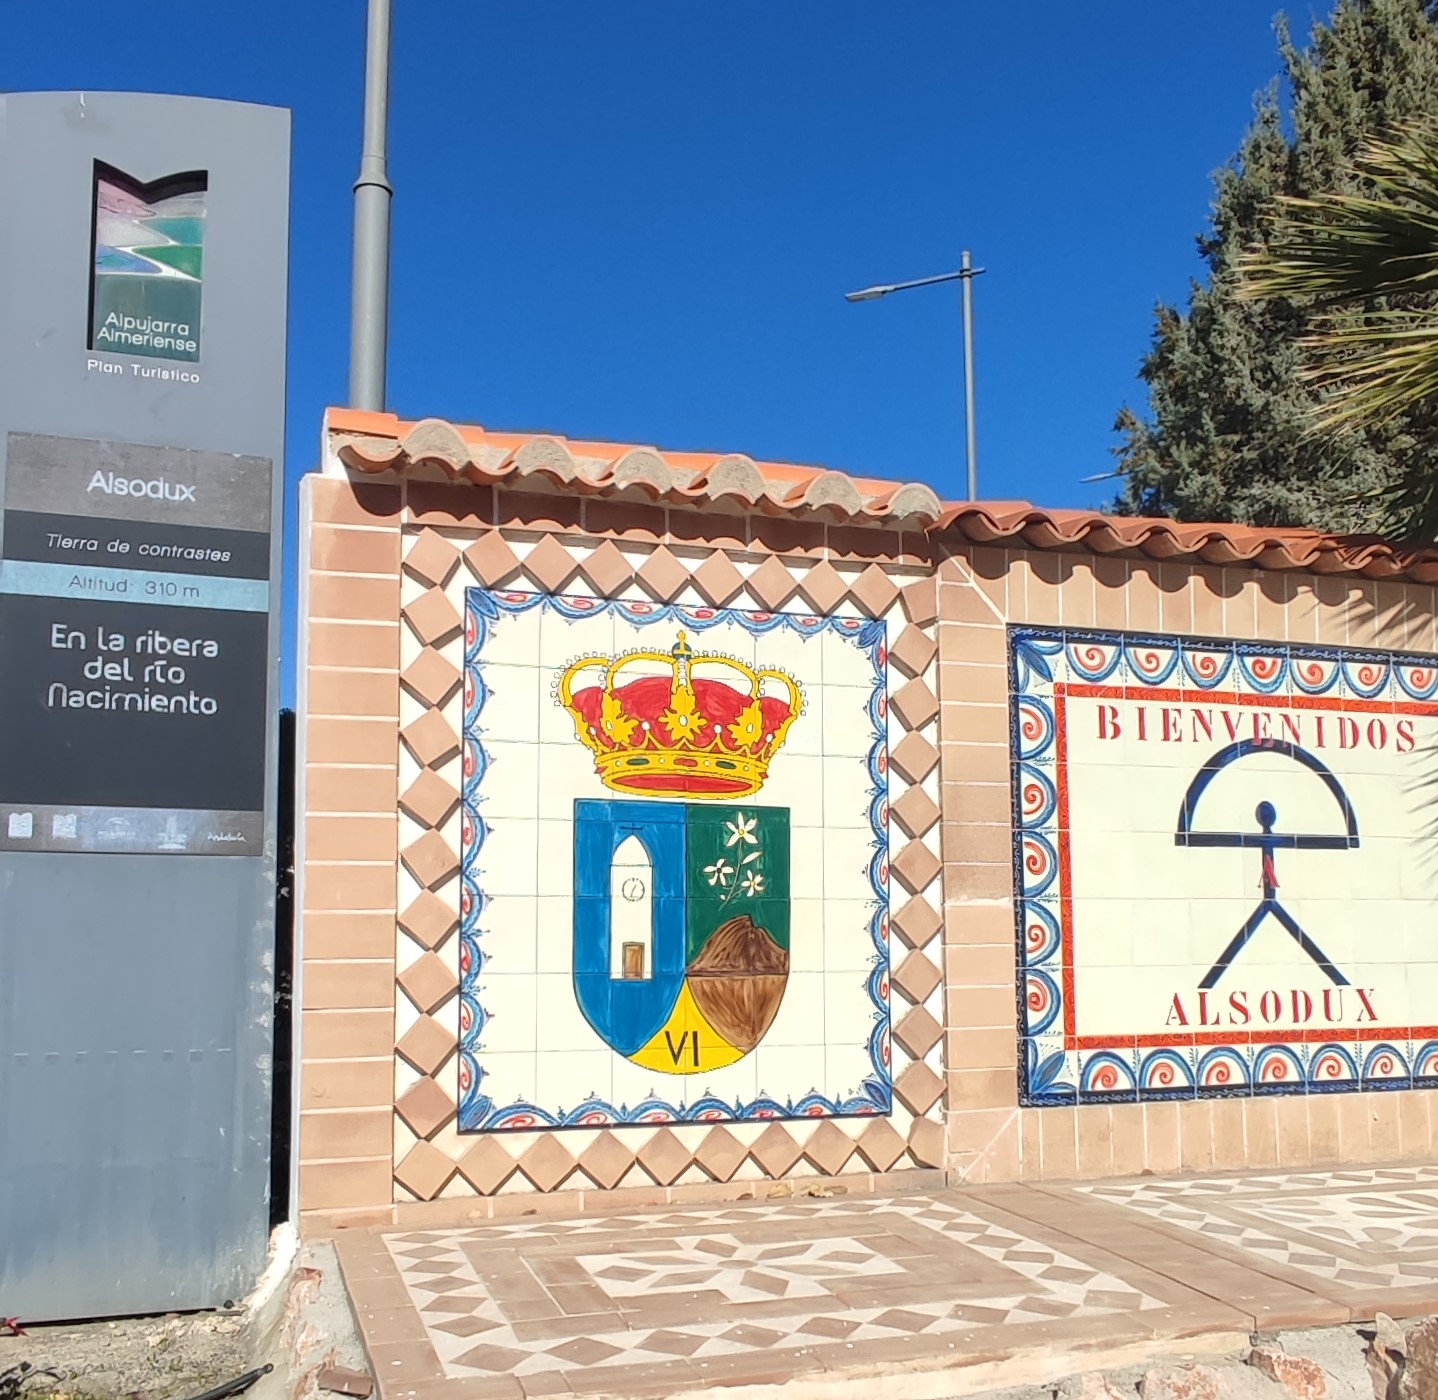 entrada del pueblo de Alsodux en el que se ve representado el escudo del pueblo y el indalo